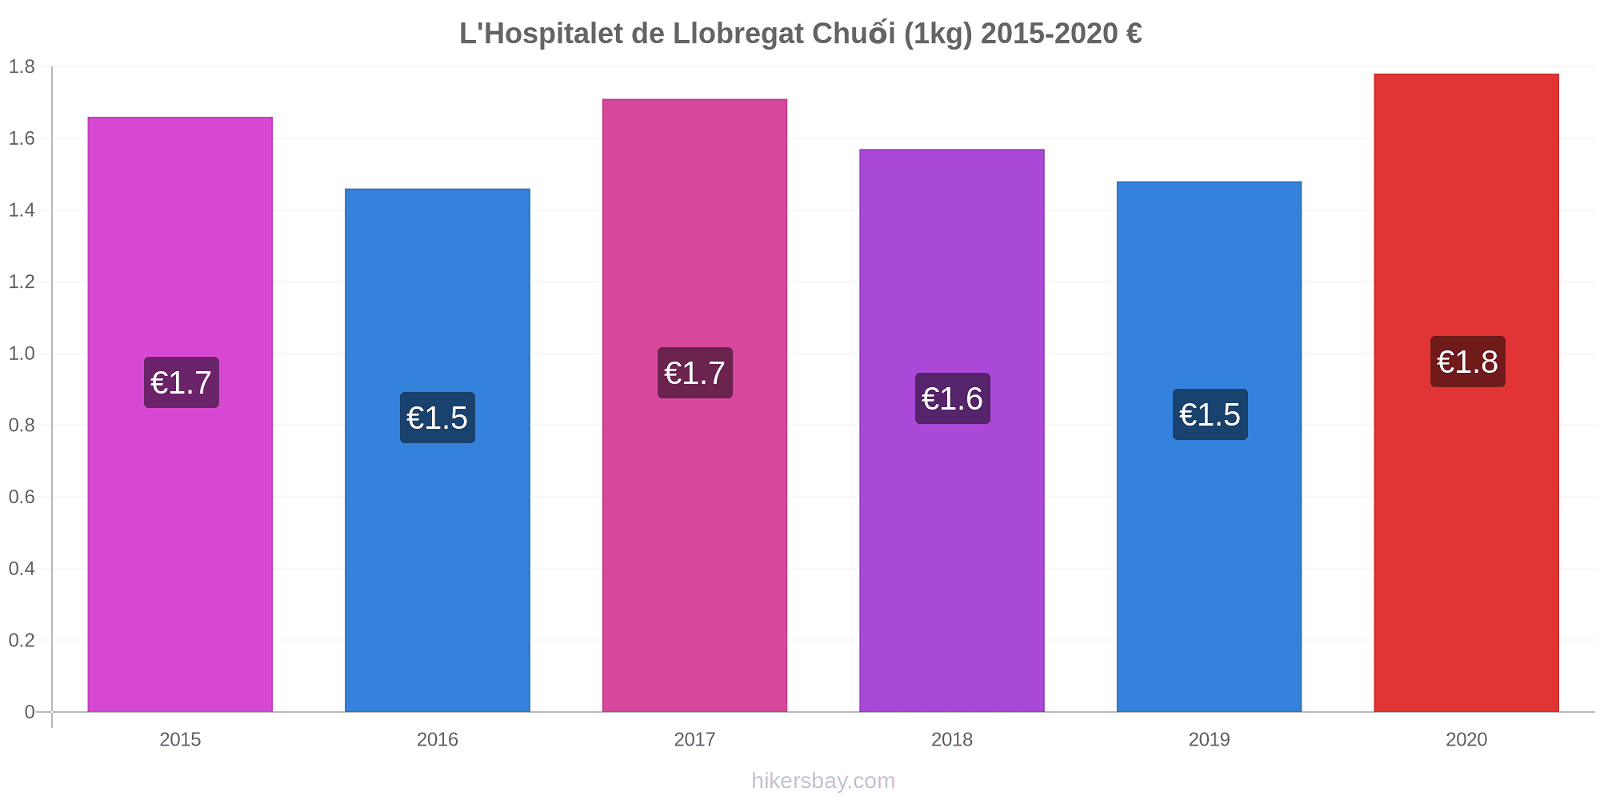 L'Hospitalet de Llobregat thay đổi giá Chuối (1kg) hikersbay.com